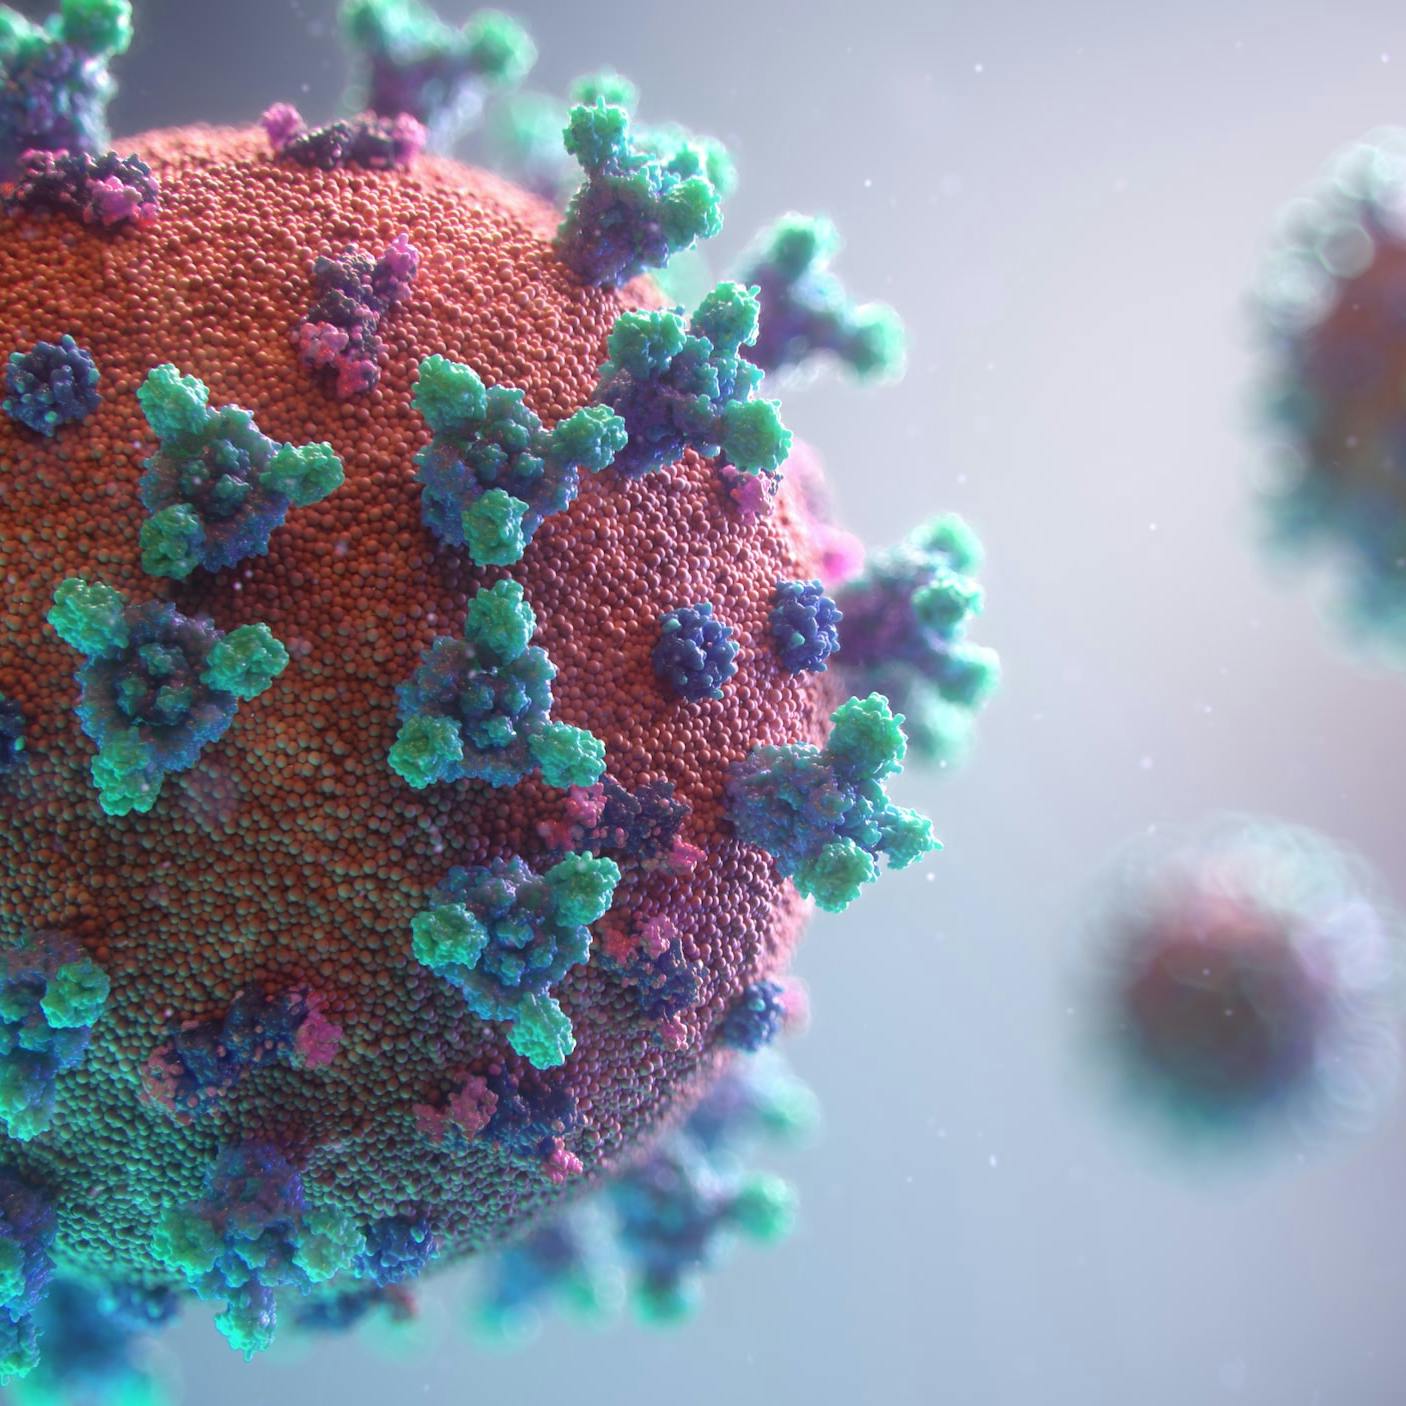 Three-dimensional visualization of Coronavirus